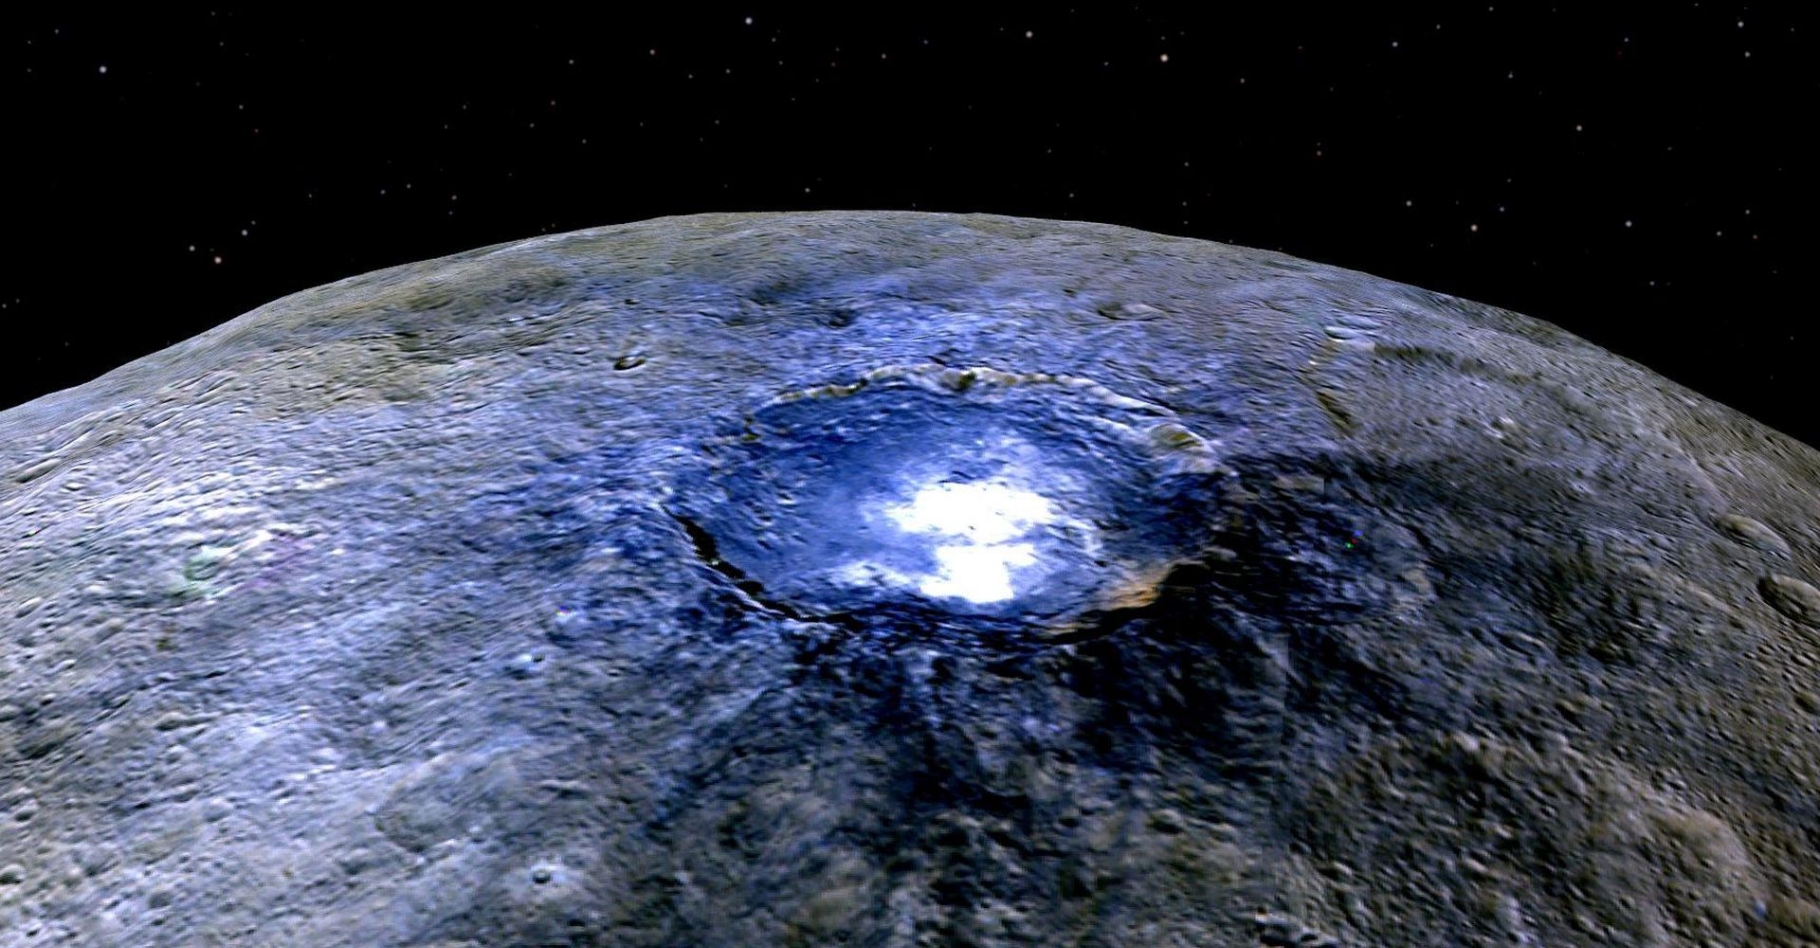 Image en fausses couleurs de Cérès. Acquise depuis une altitude de 4.400 kilomètres, elle renseigne les scientifiques sur les différents composants de la surface de cette planète naine. Cette couleur bleue est généralement associée à des matériaux brillants, comme des sulfates. Plus de 130 autres endroits de ce type ont été recensés sur cette planète naine. © Nasa, JPL-Caltech, UCLA, MPS, DLR, IDA